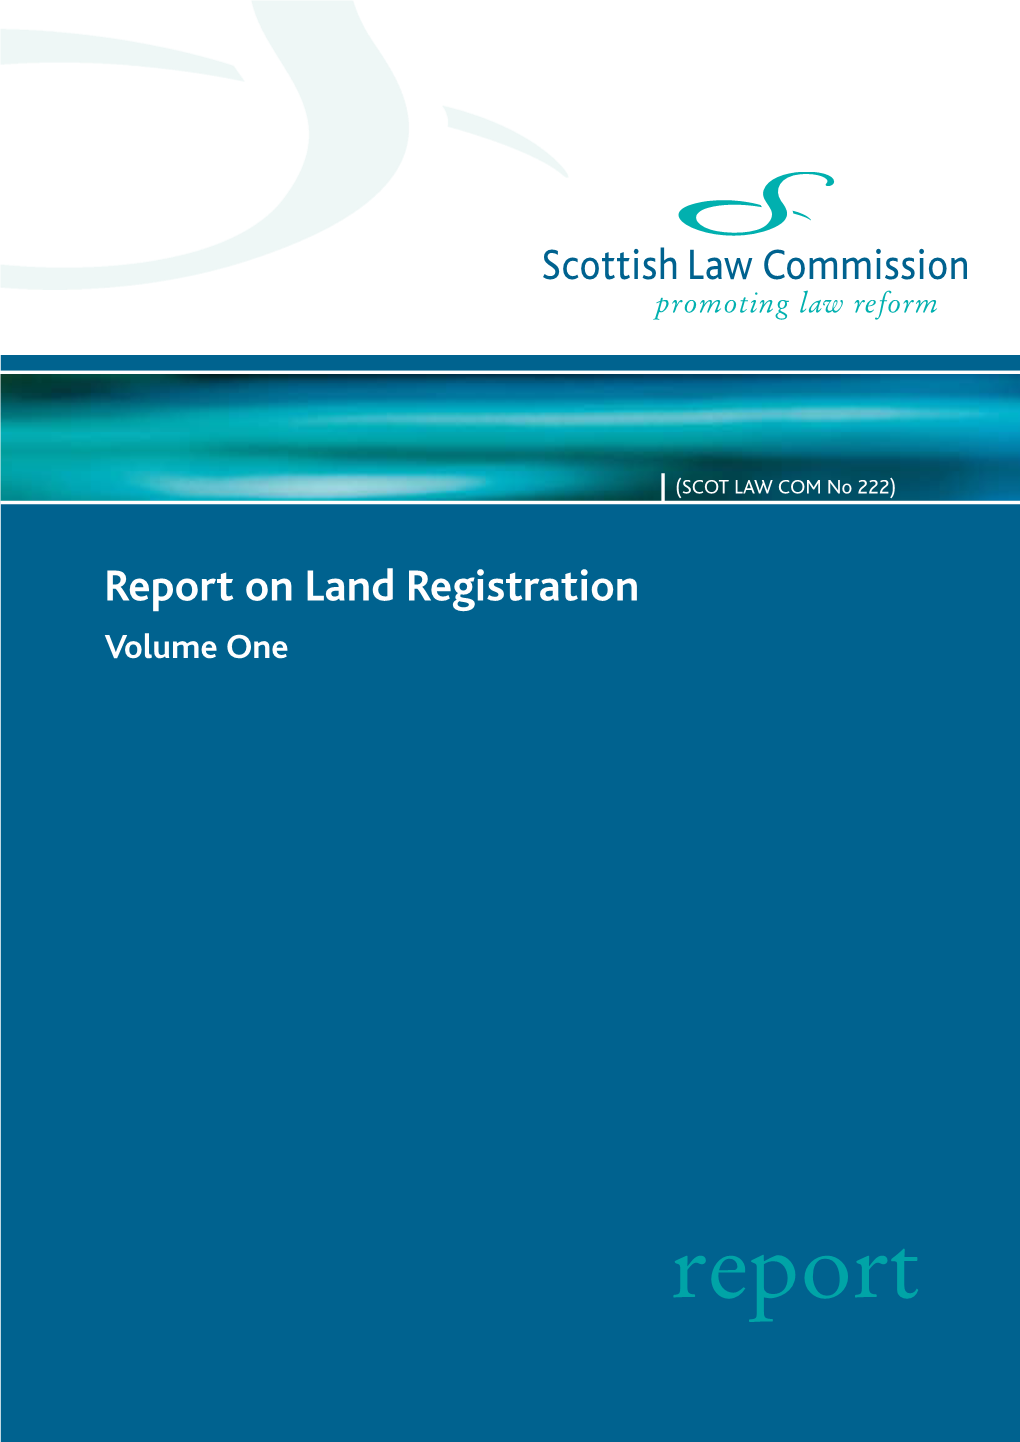 Report on Land Registration Vol 1 (SLC 222)